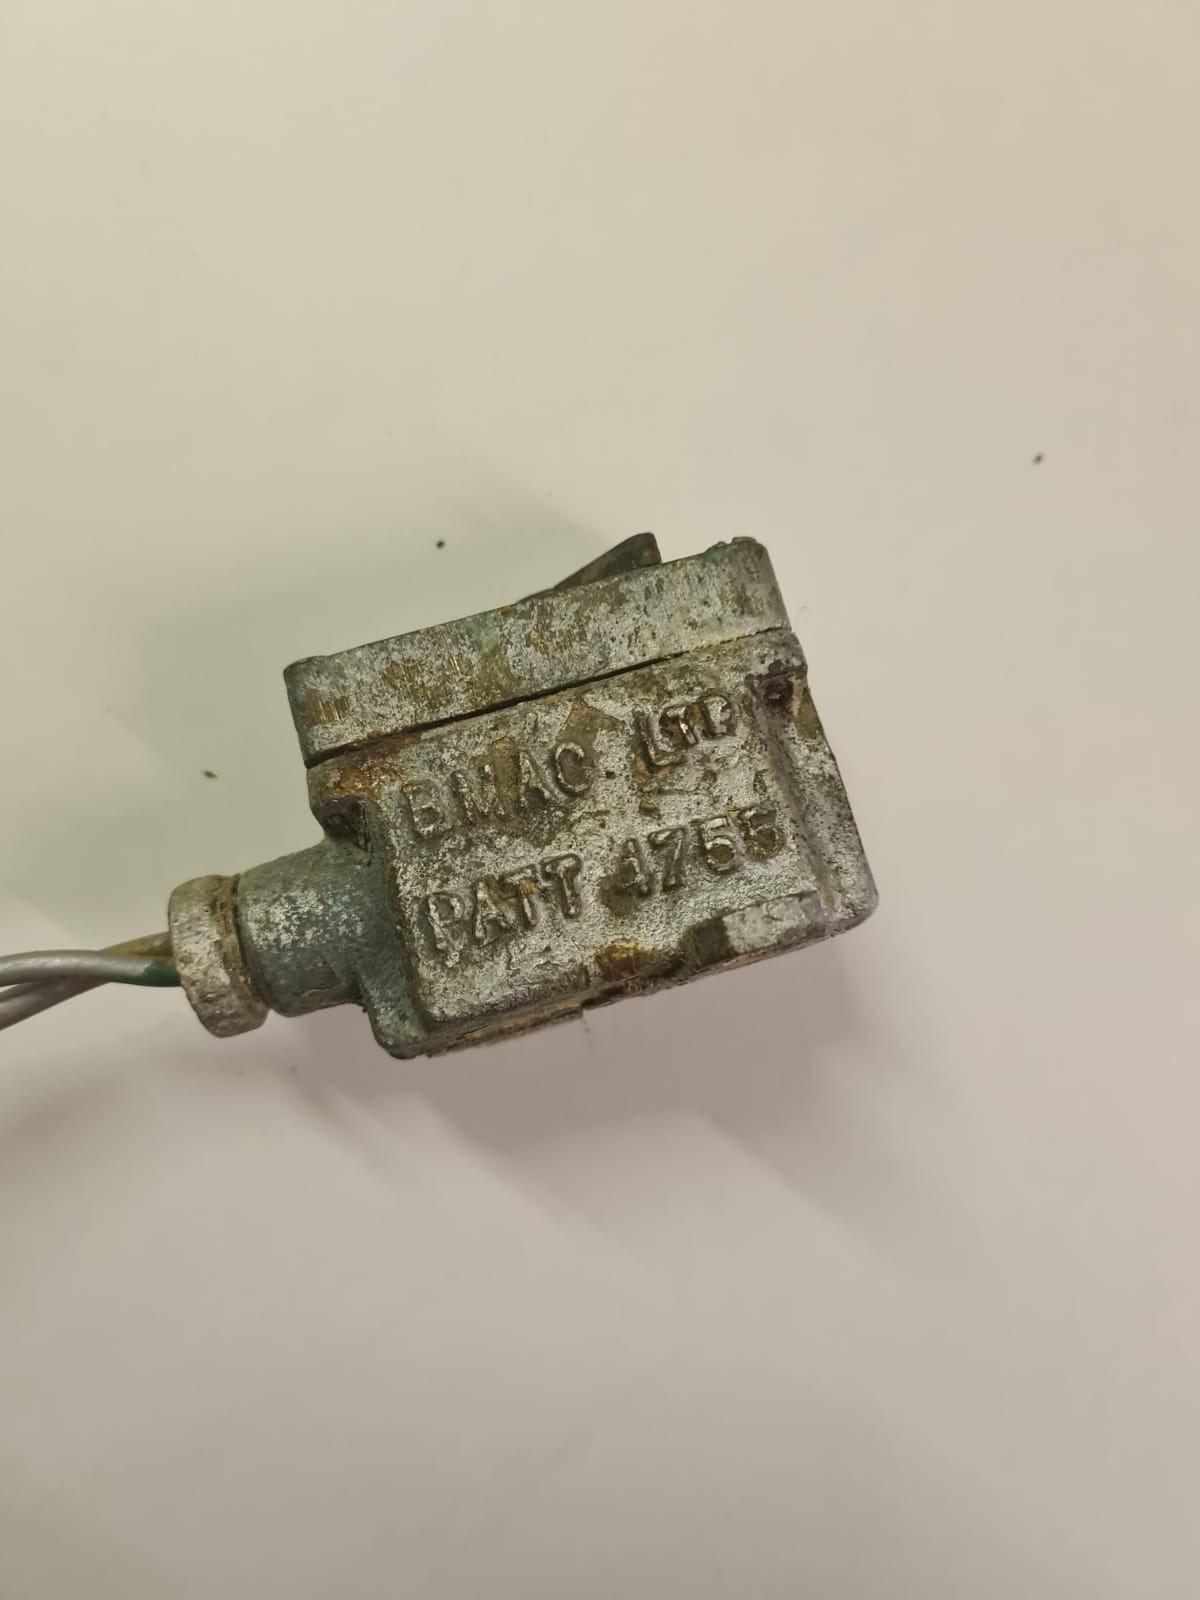 Original switch found on the WW2 warship